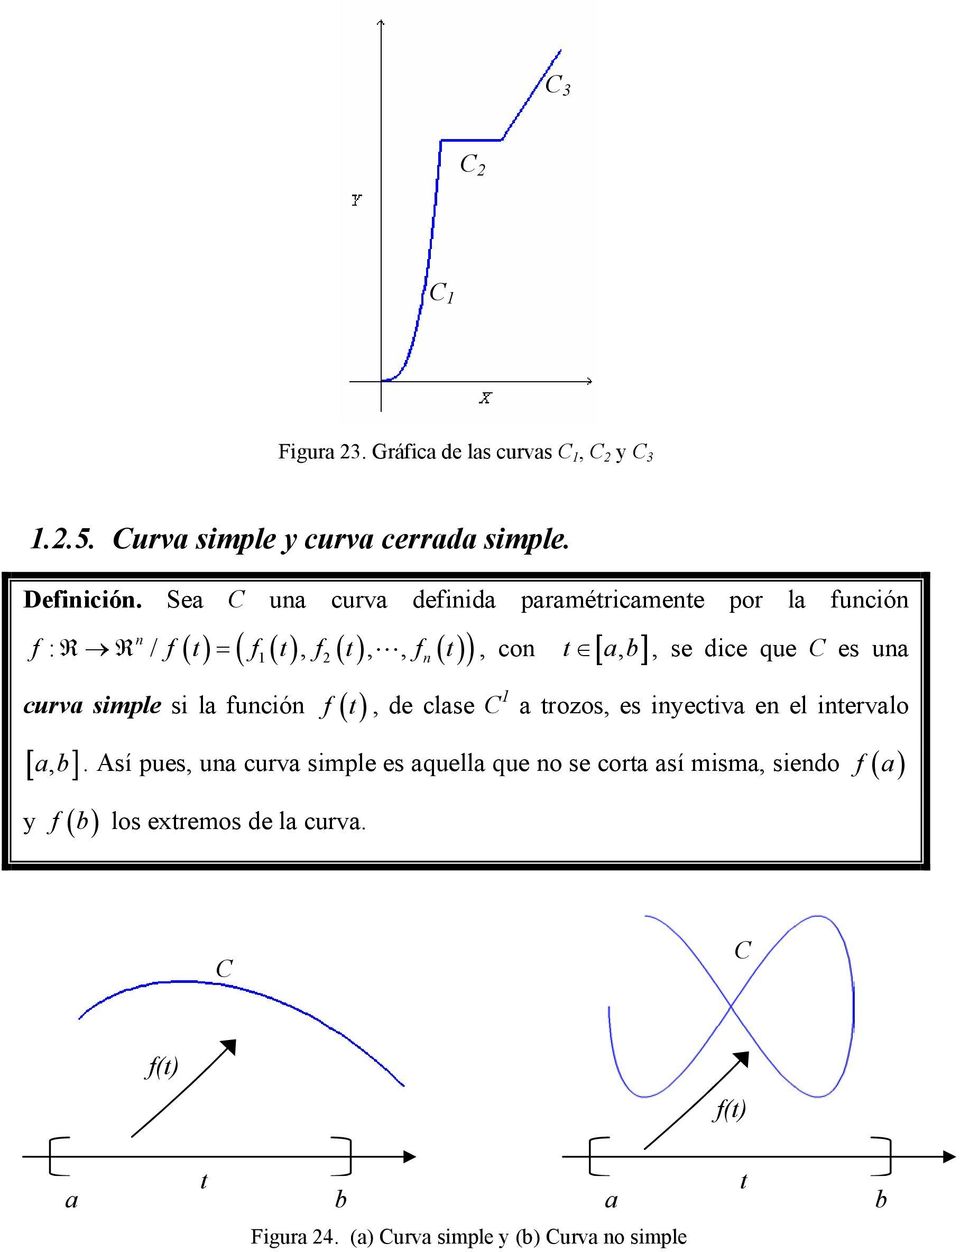 es una curva simple si la función f (, de clase 1 a rozos, es inyeciva en el inervalo [ ab, ].